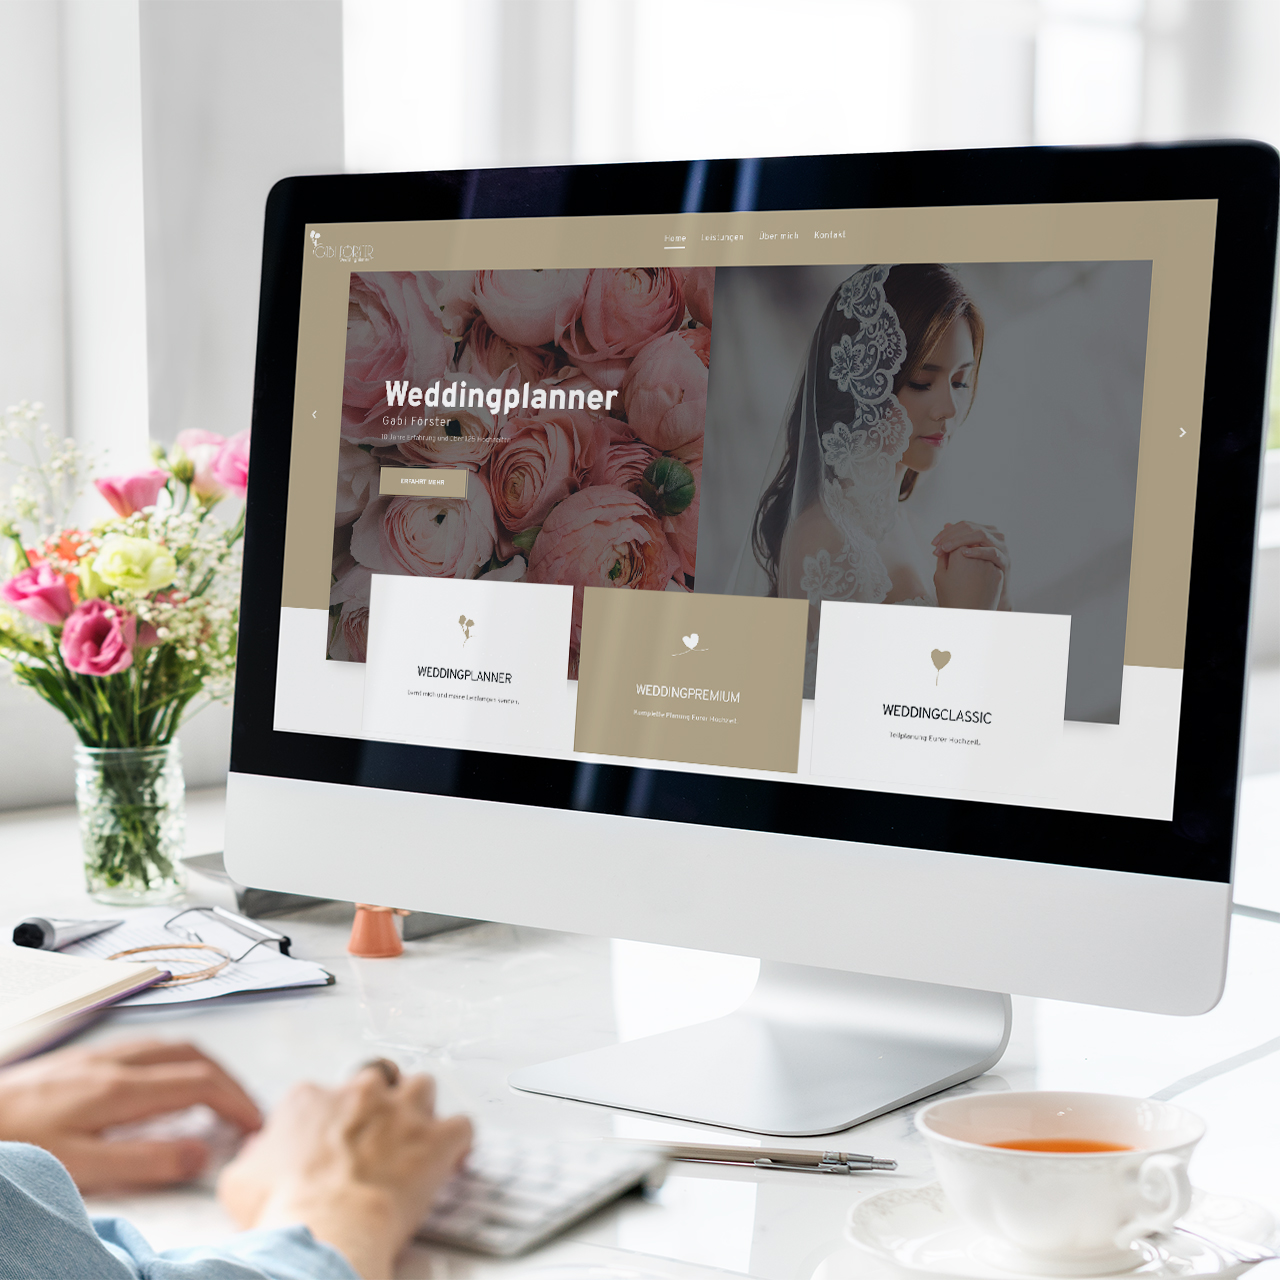 Entwicklung einer Webseite nach dem Corprate-Design der Weddingplannerin